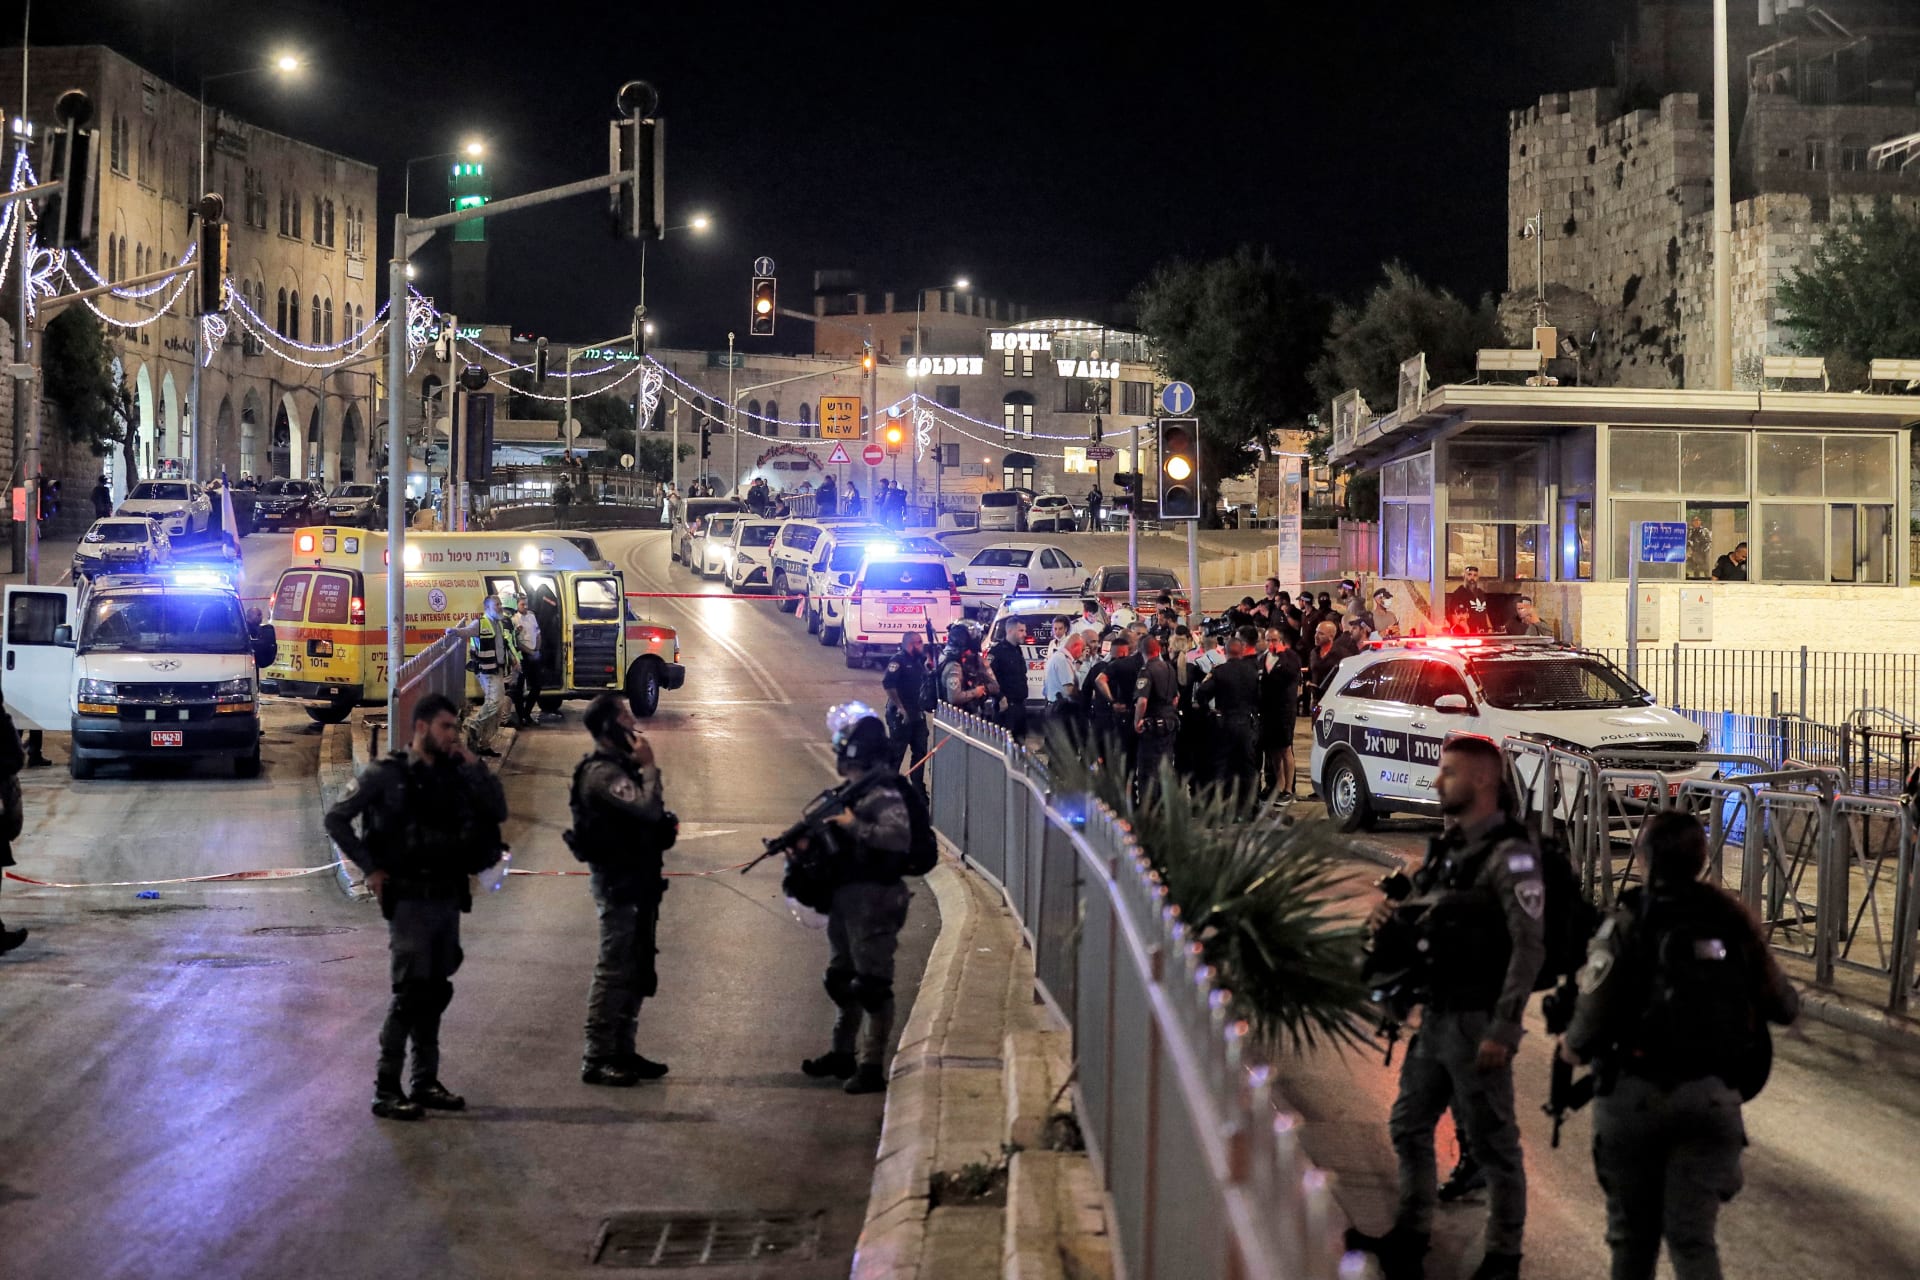 طعن شرطي إسرائيلي في القدس.. والمهاجم المشتبه به في حالة حرجة